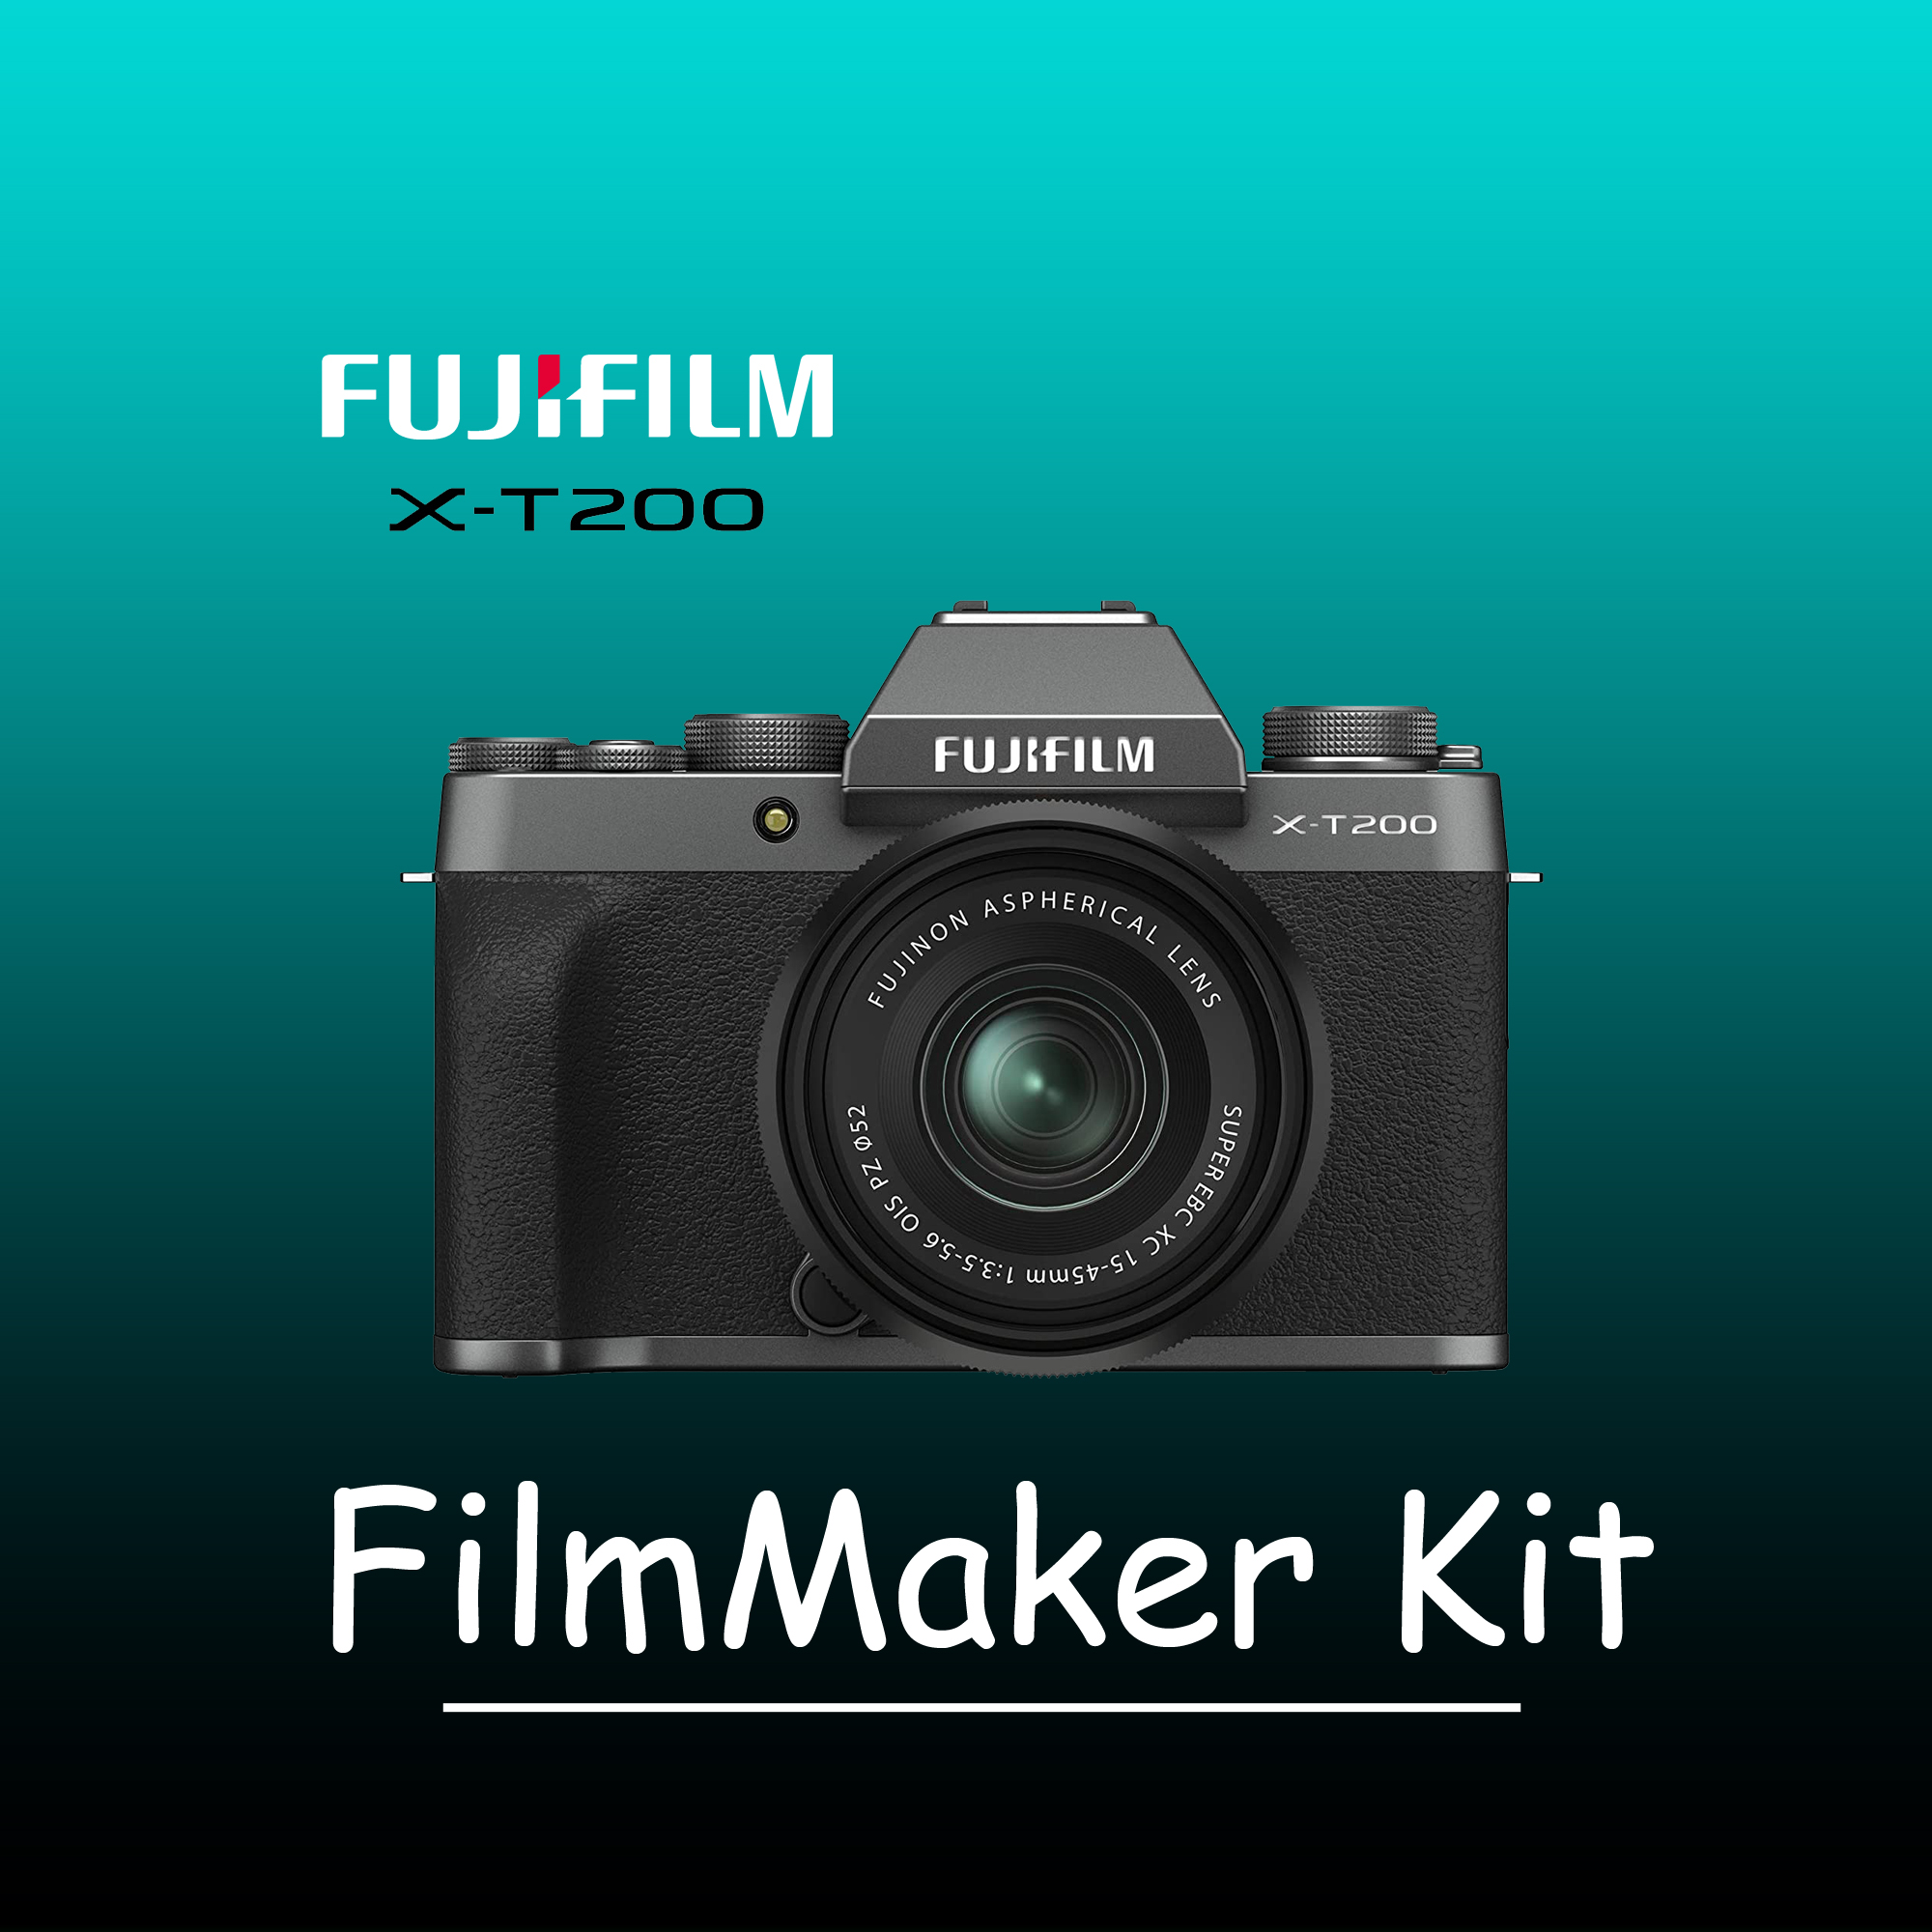 Film maker starter kit